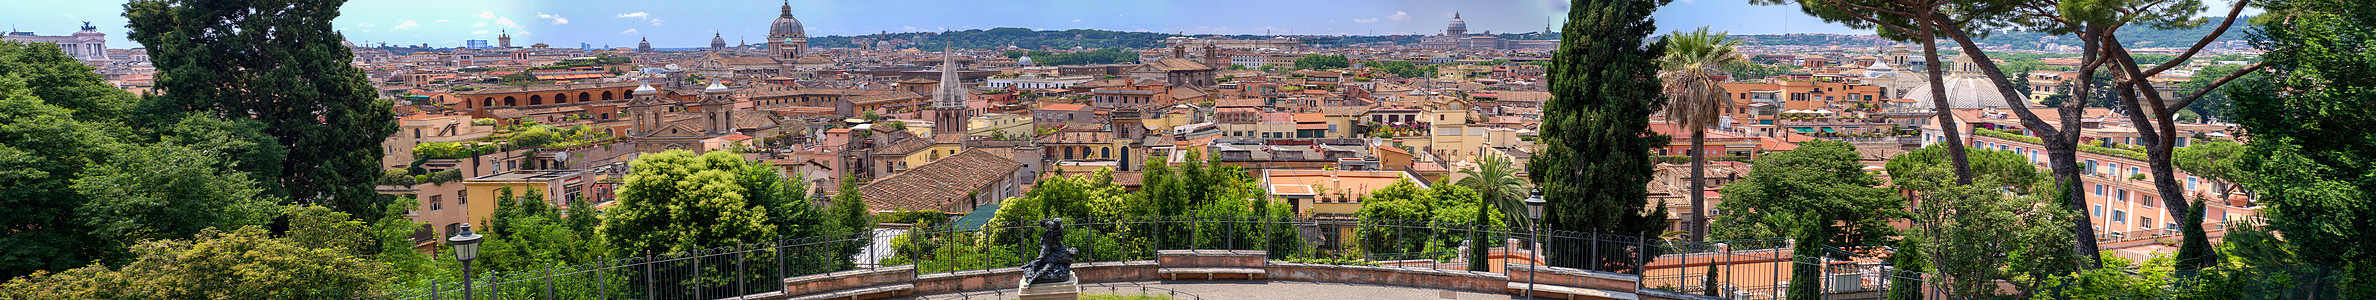 意大利罗马 城市天线的全景巨型图象图片